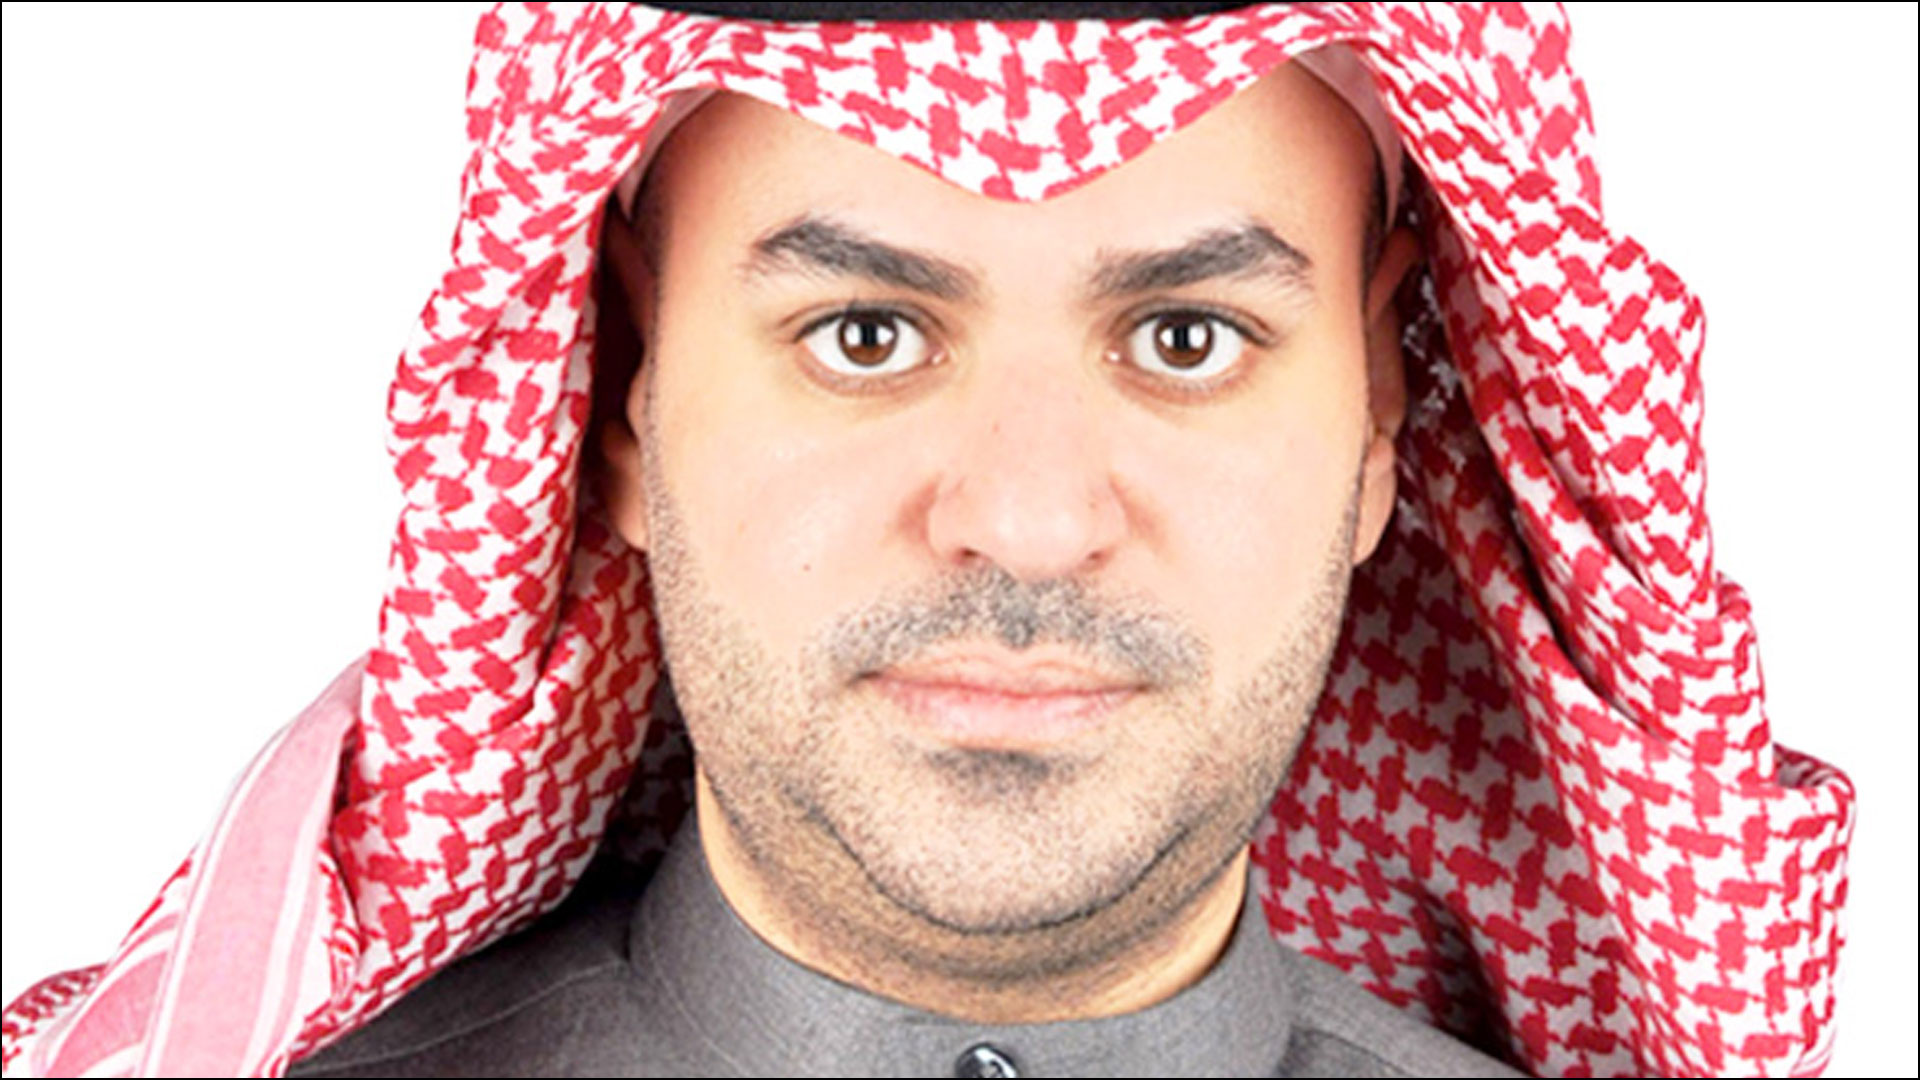 الإعلامي السعودي علي العلياني يقاضي هيئة الأمر بالمعروف